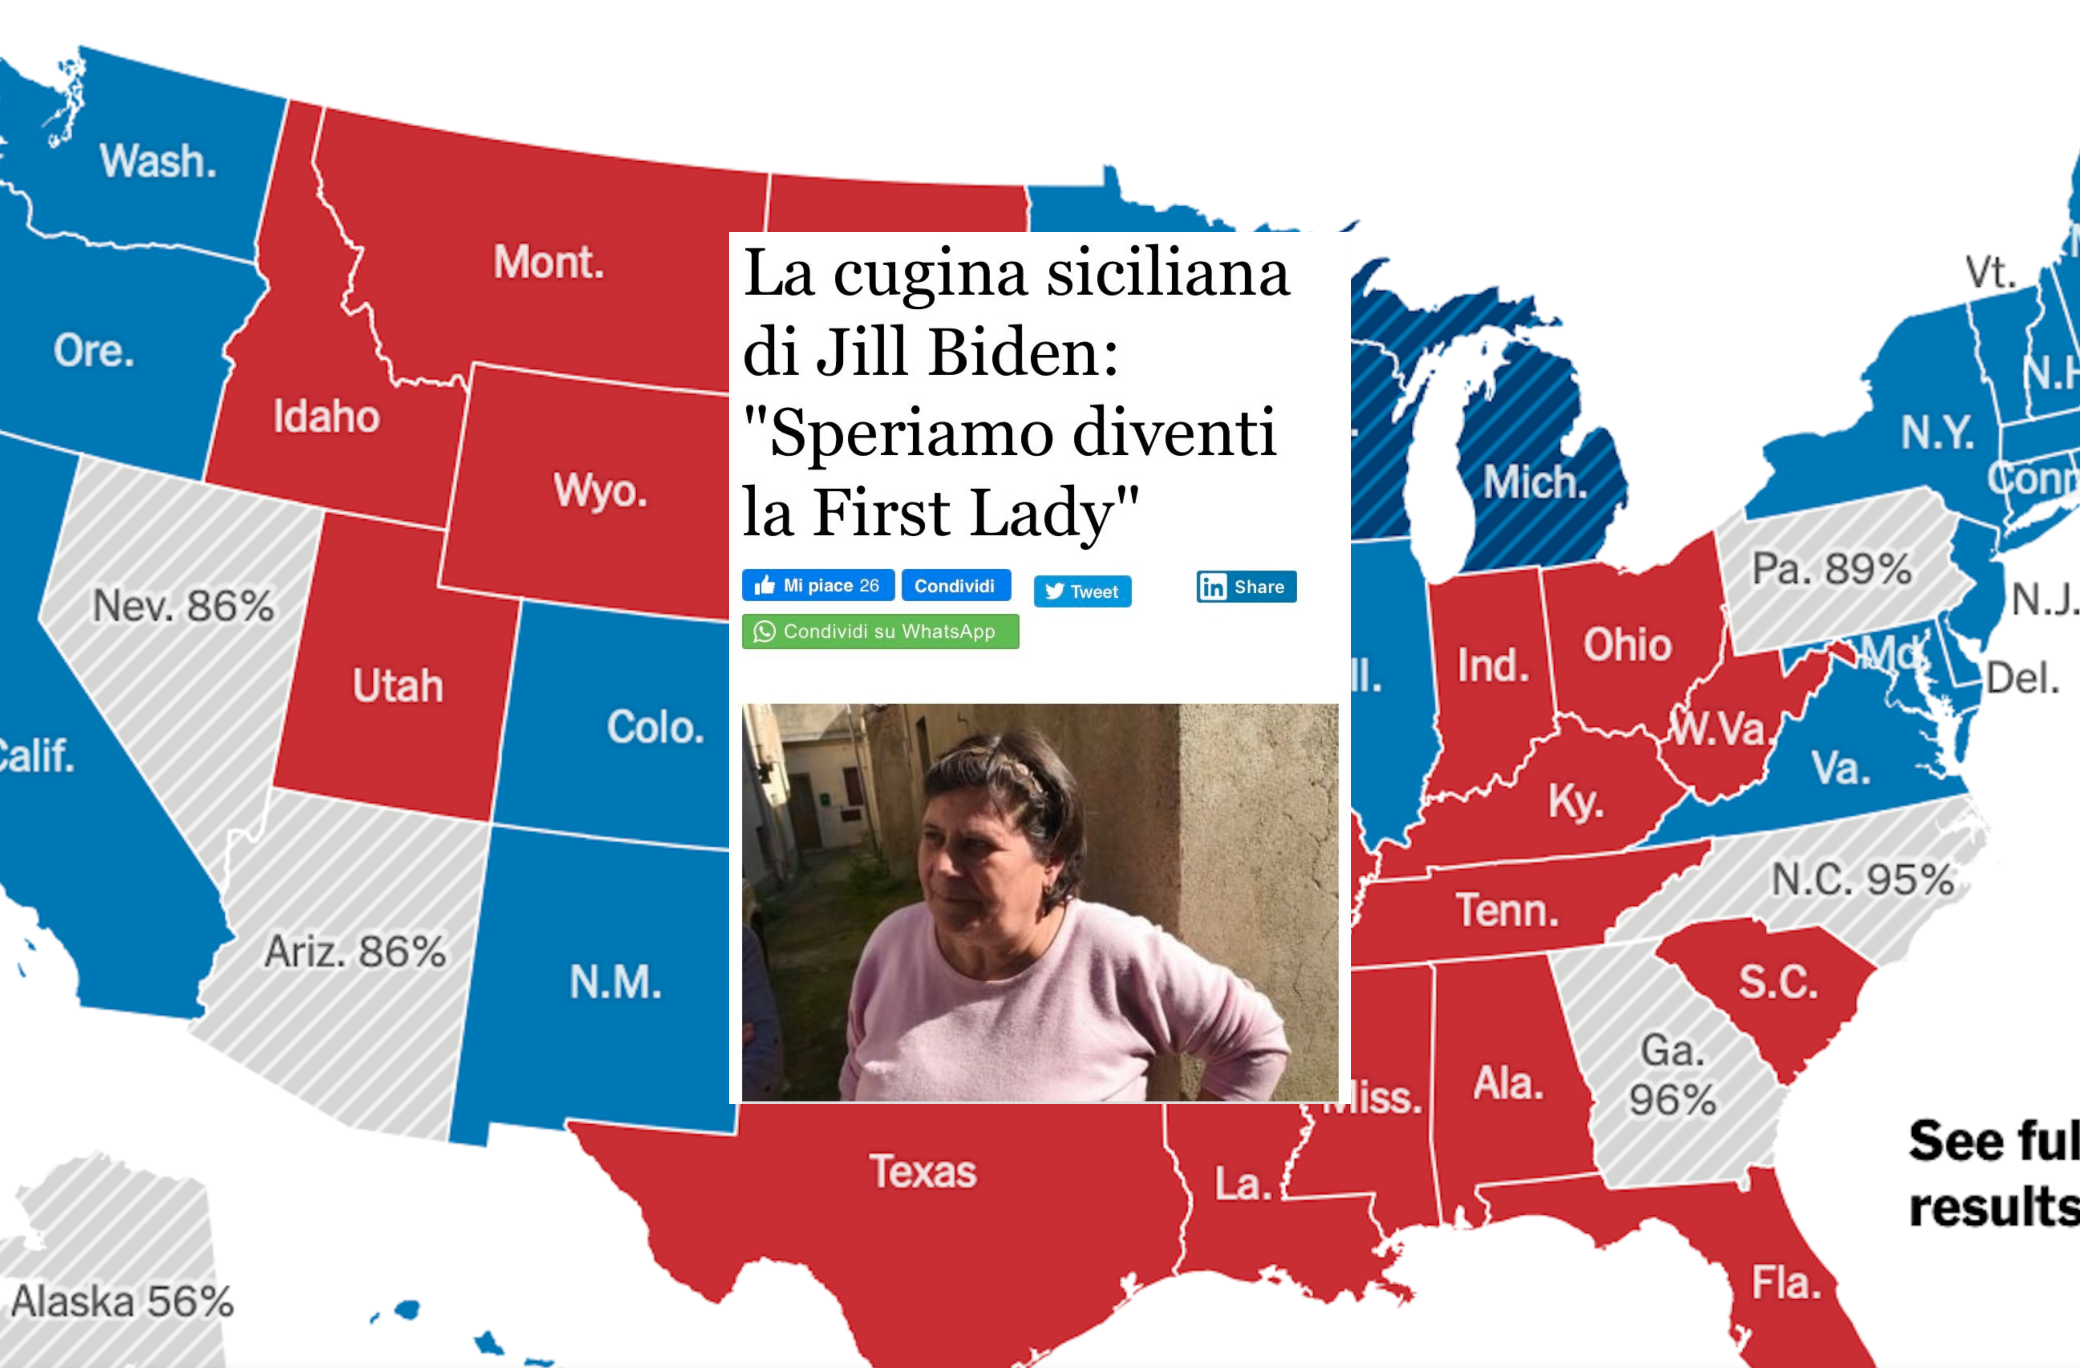 “La cugina siciliana di Jill Biden” e la mania di trovare sempre “un po’ di Italia” nelle cose